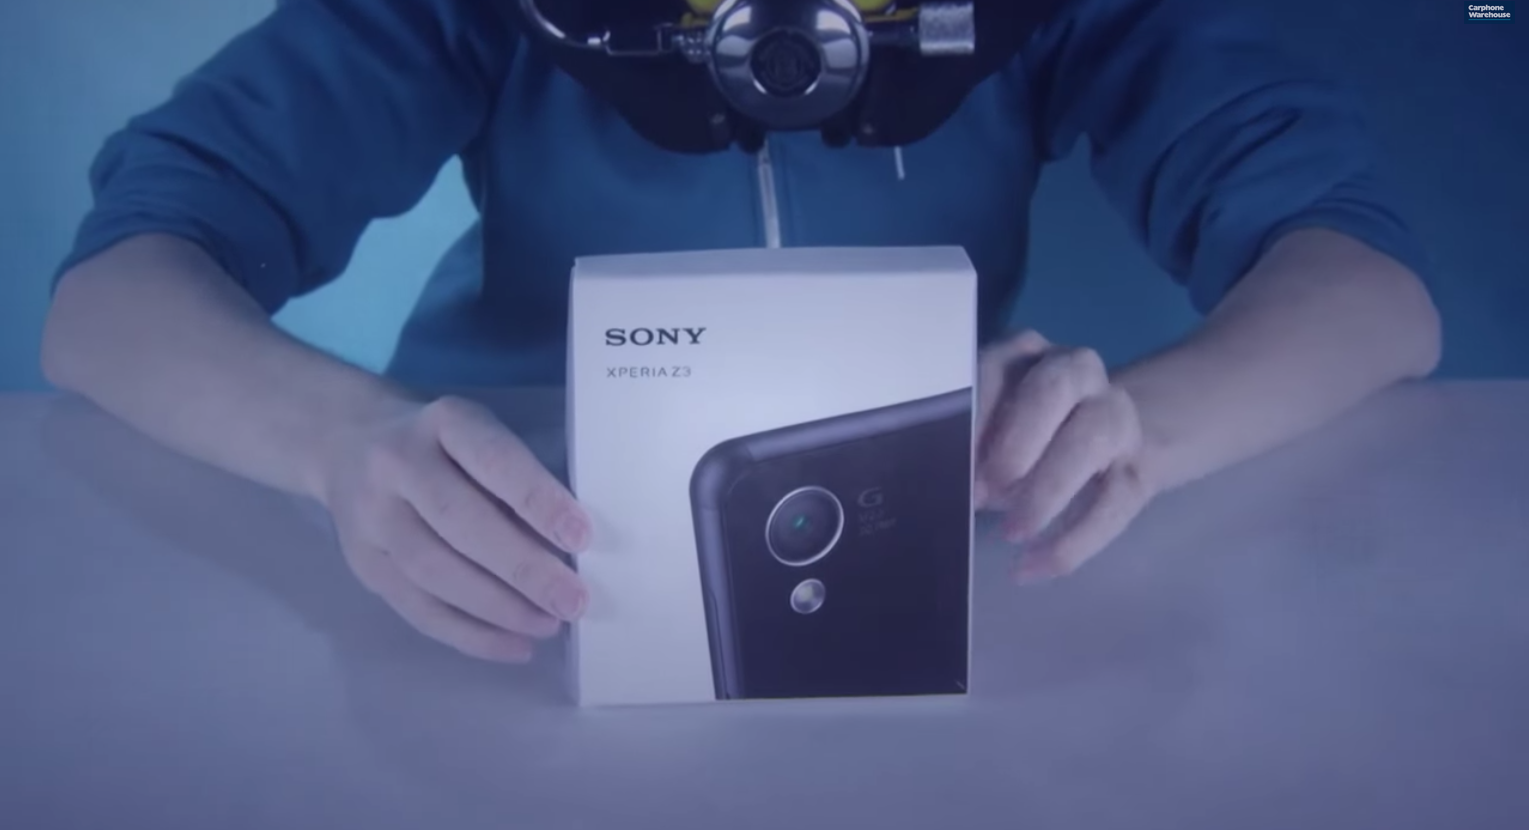 ธรรมดาๆ ได้ที่ไหน จัดไปกับการแกะกล่อง Sony Xperia Z3 ใต้น้ำ พร้อมถ่าย selfie โชว์สุดล้ำ